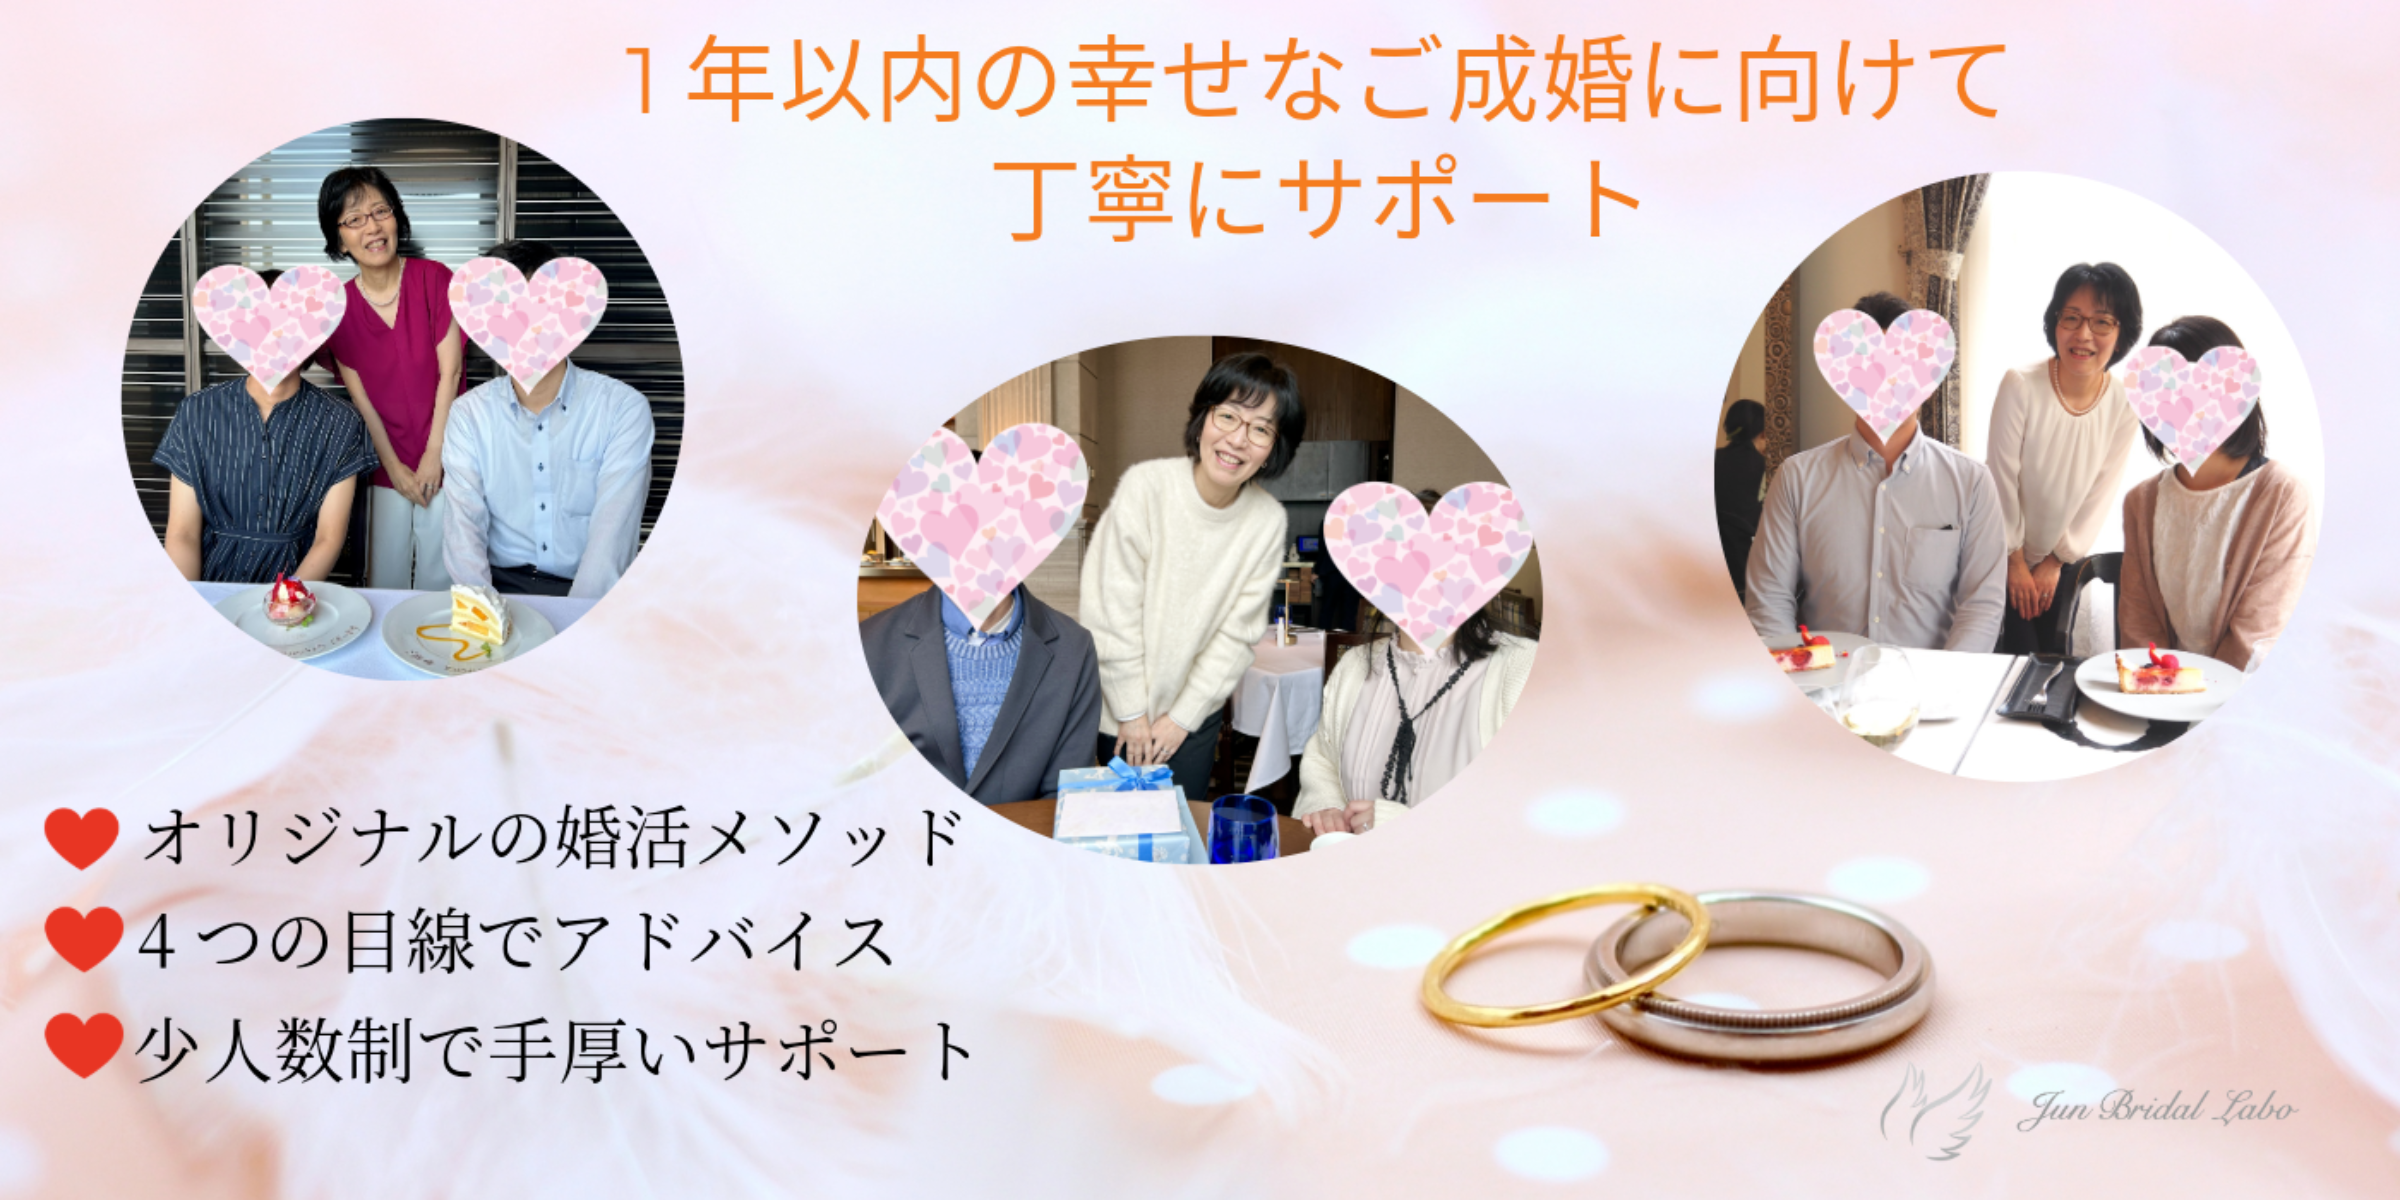 幸せな結婚ができる神戸の結婚相談所ＪＵＮブライダル・ラボ